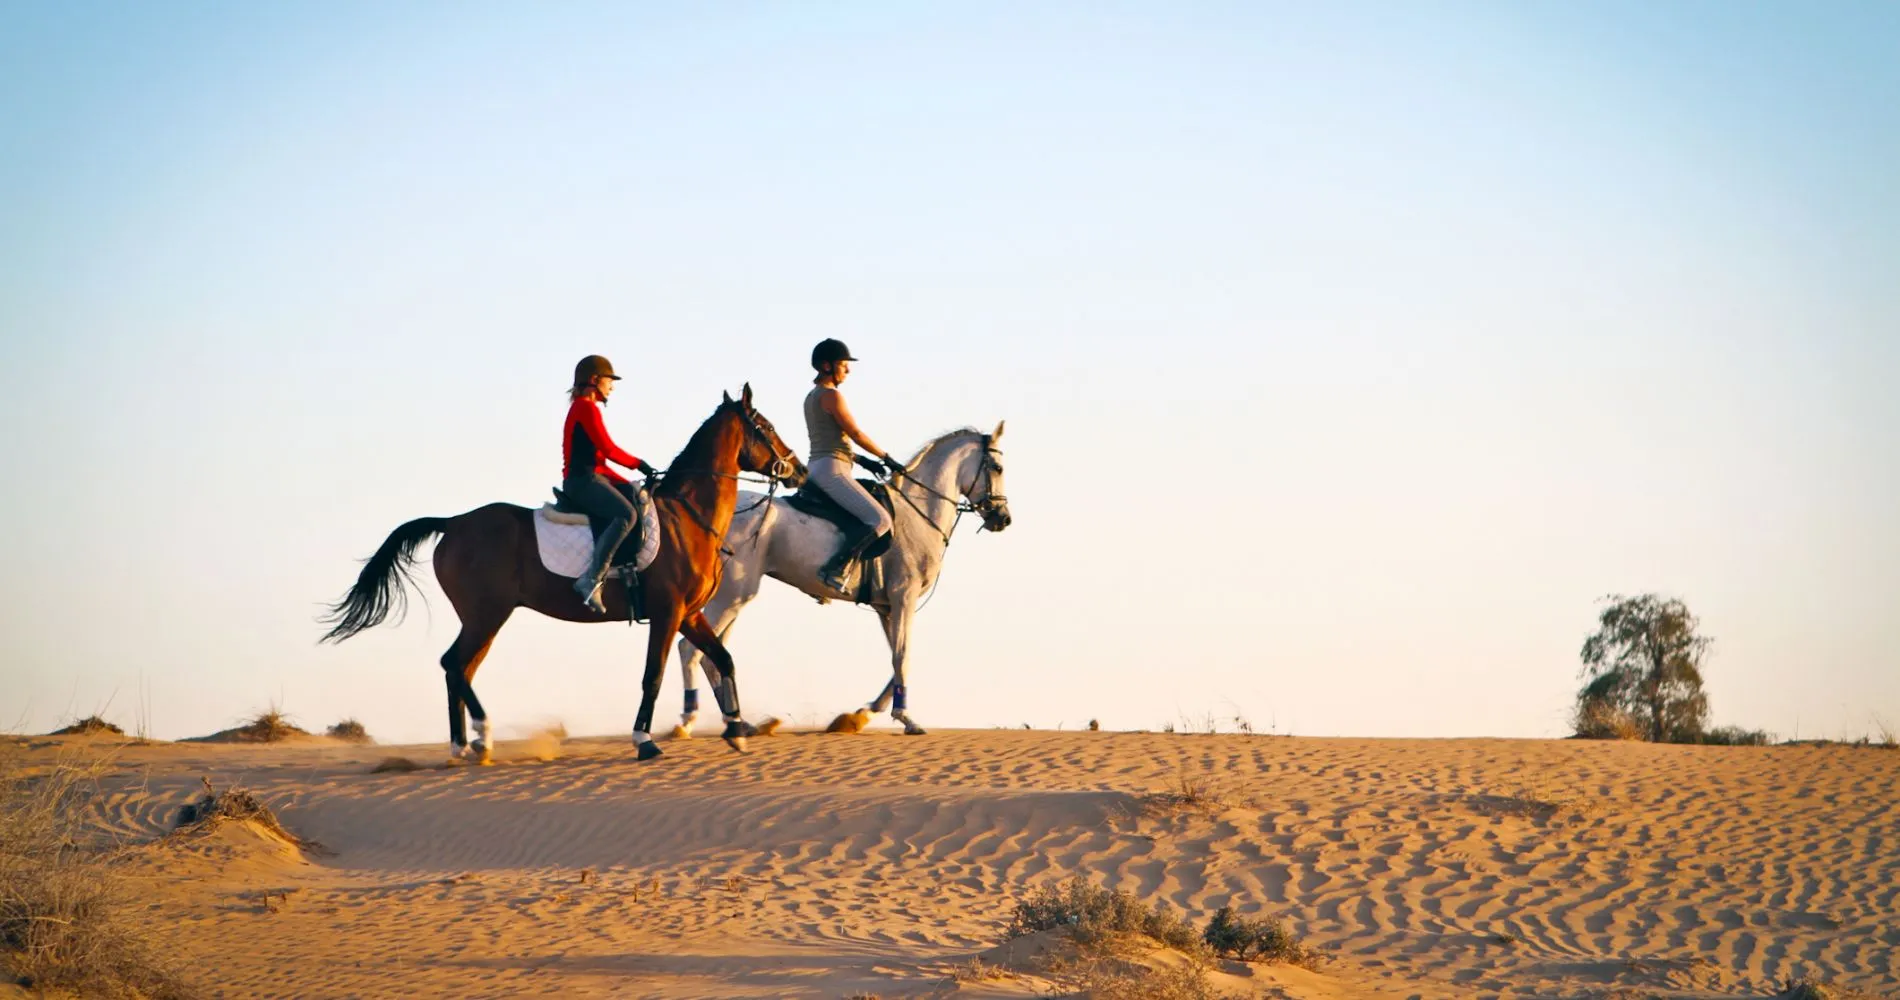 Необыкновенное приключение ждет вас в Абу-Даби! Окунитесь в мир аравийской культуры и пройдите верховую прогулку на скакунах.